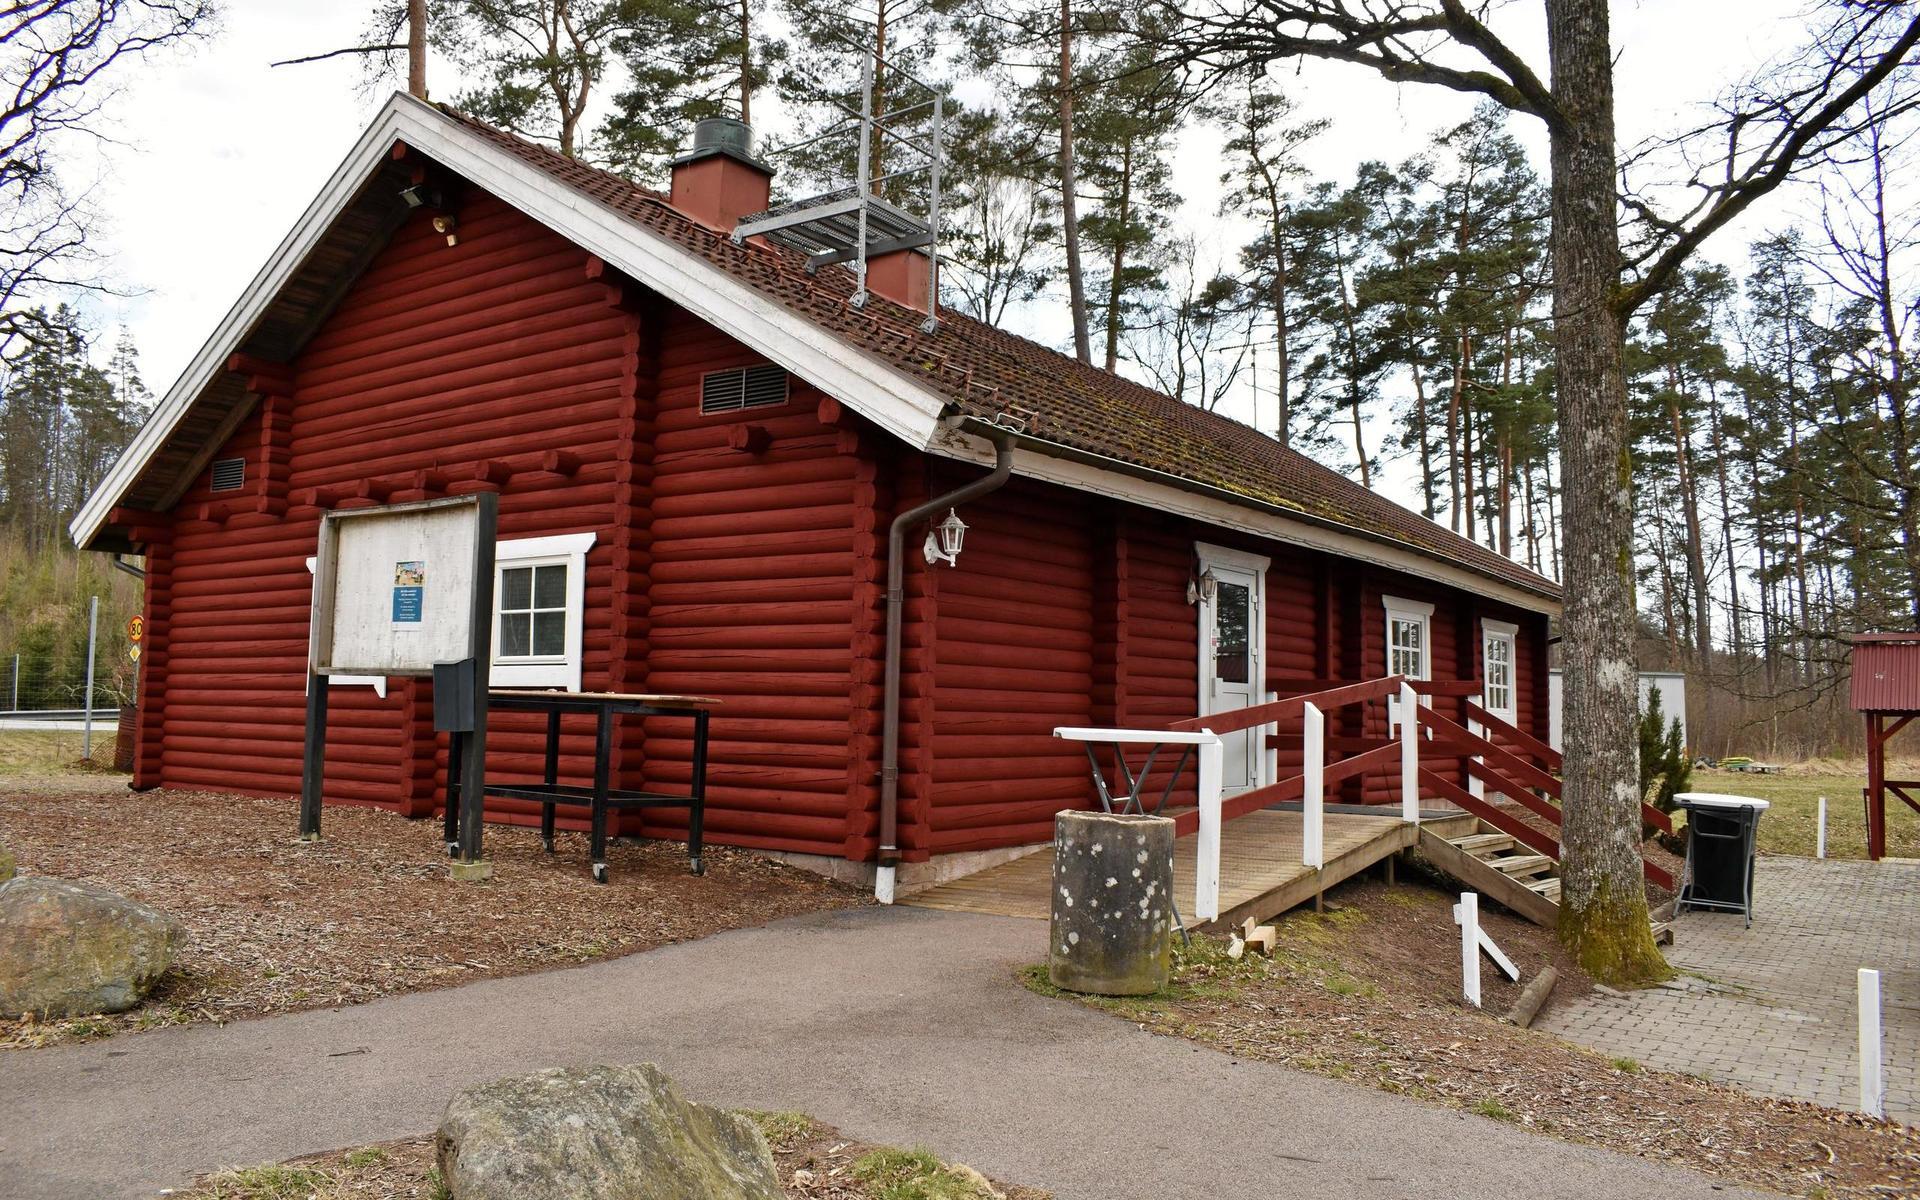 Skärshults värdshus ligger mitt emellan riksväg 26 och Skärshultssjön. 2015 utsågs området till Sveriges bästa rastplats.